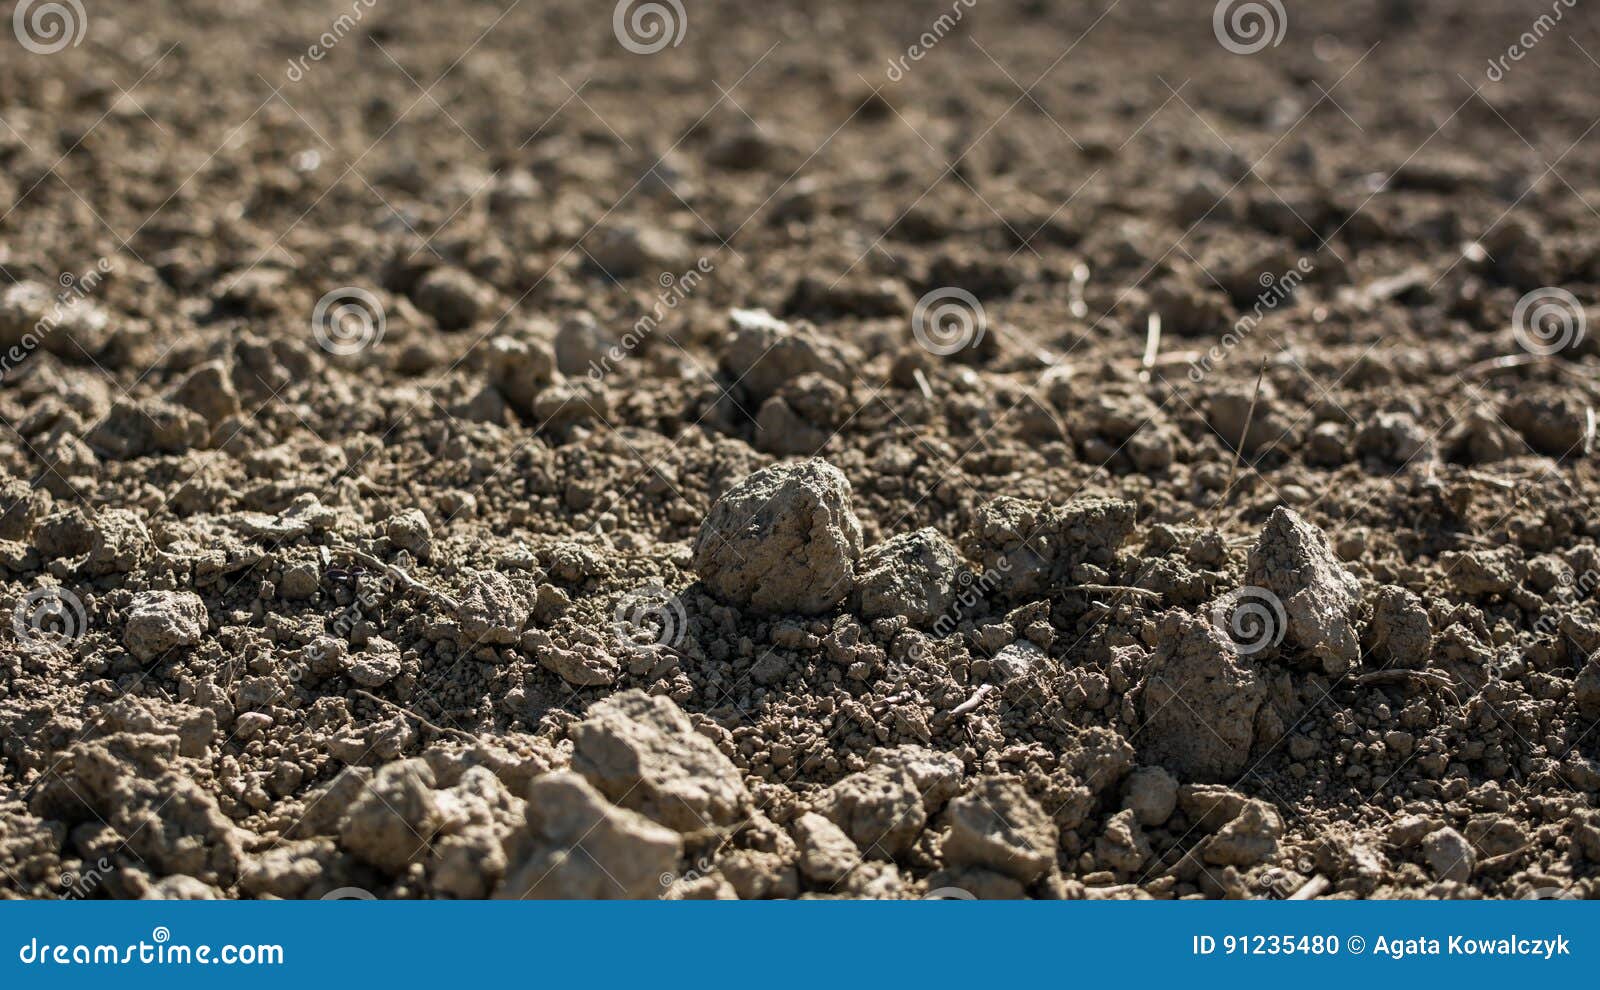 barren field during drought